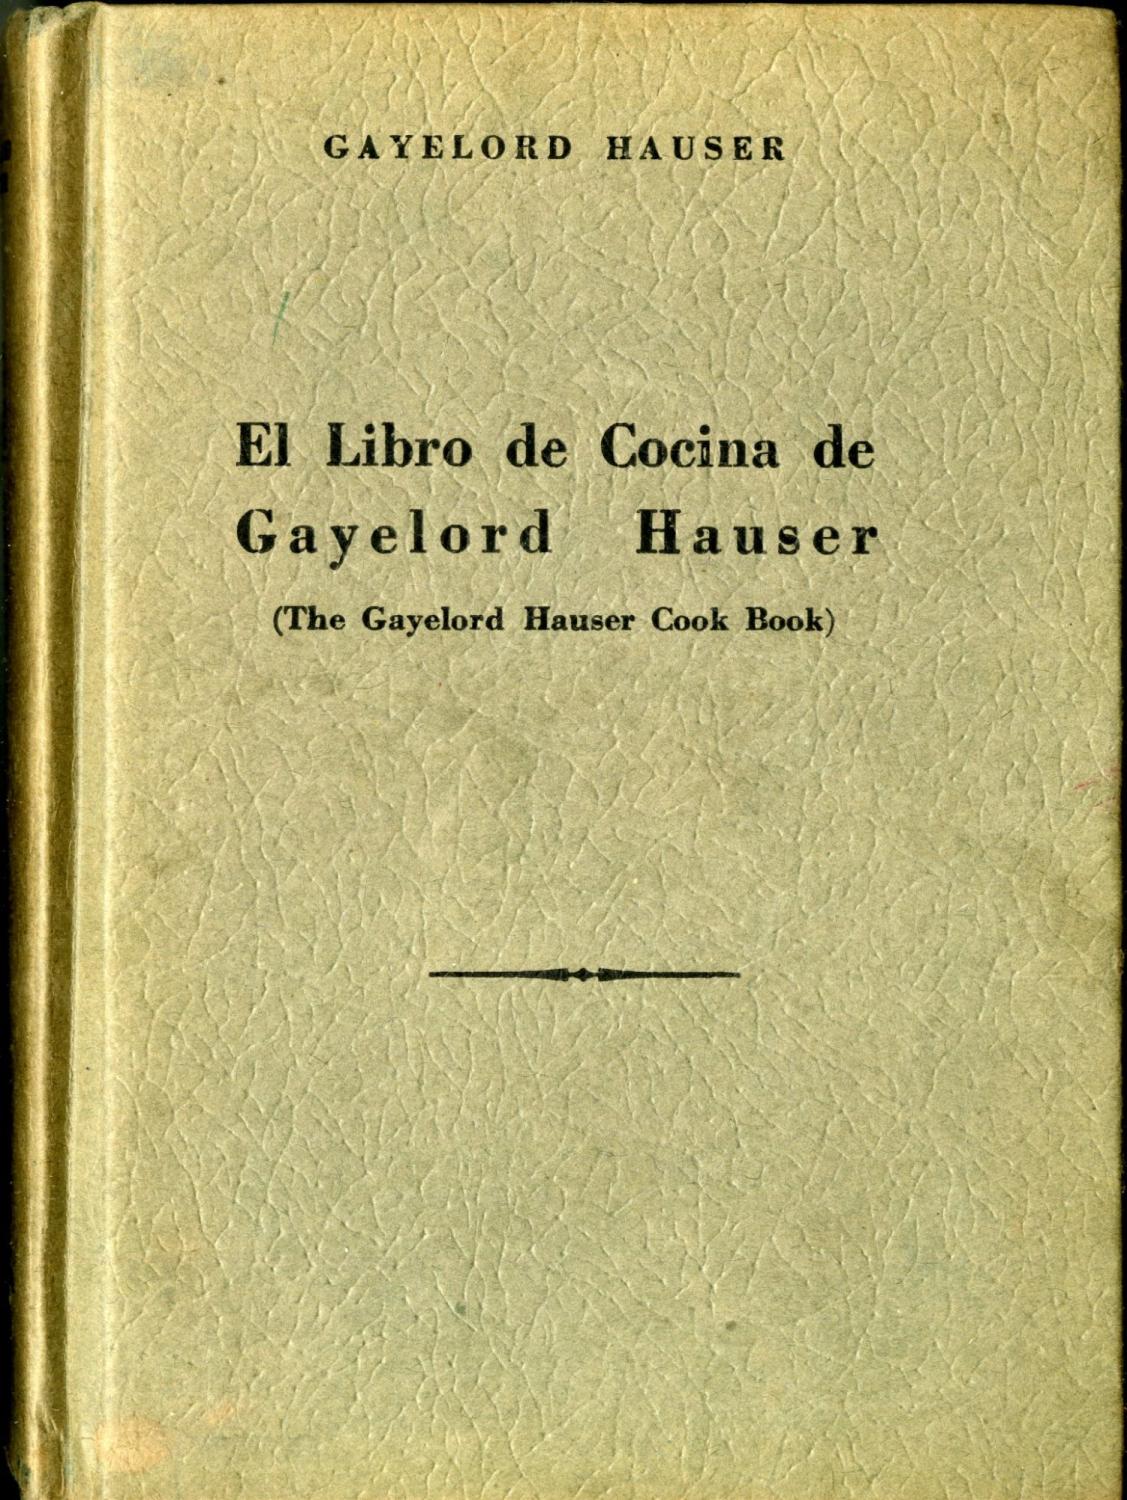 El Libro de Cocina de Gayelord Hauser